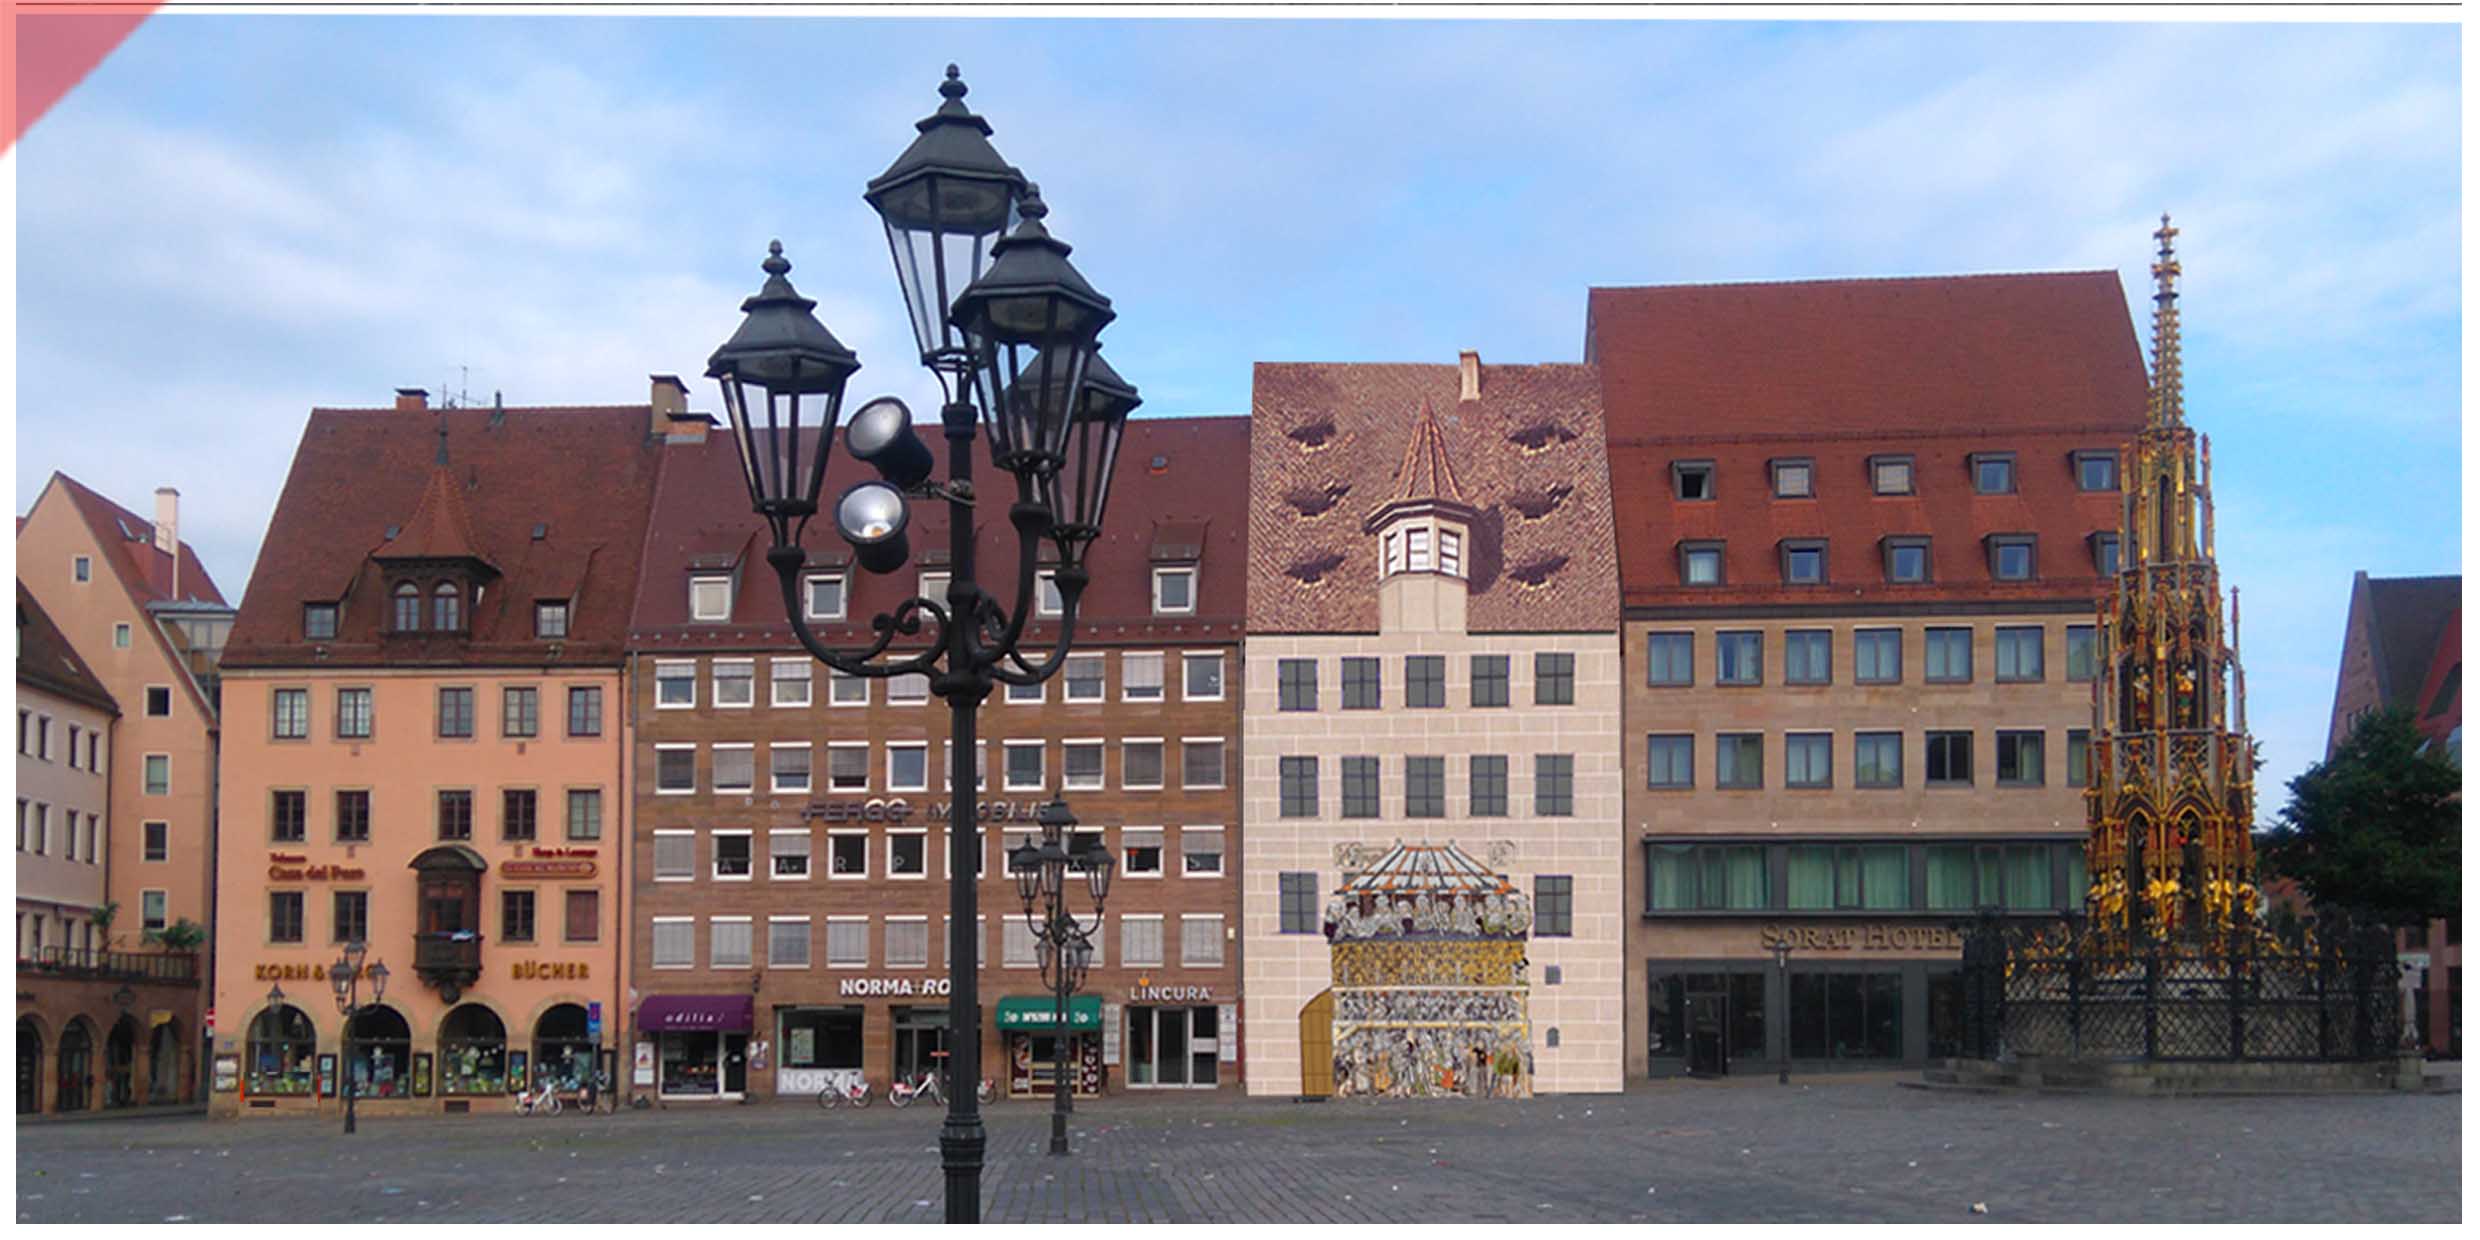 Heiltumsweisung-Nürnberg-Hauptmarkt-15-Schopper-Behaim-1424-1523-Rekonstruktion-Gebäude-3-Gebäudefront-Westseite-Panorama